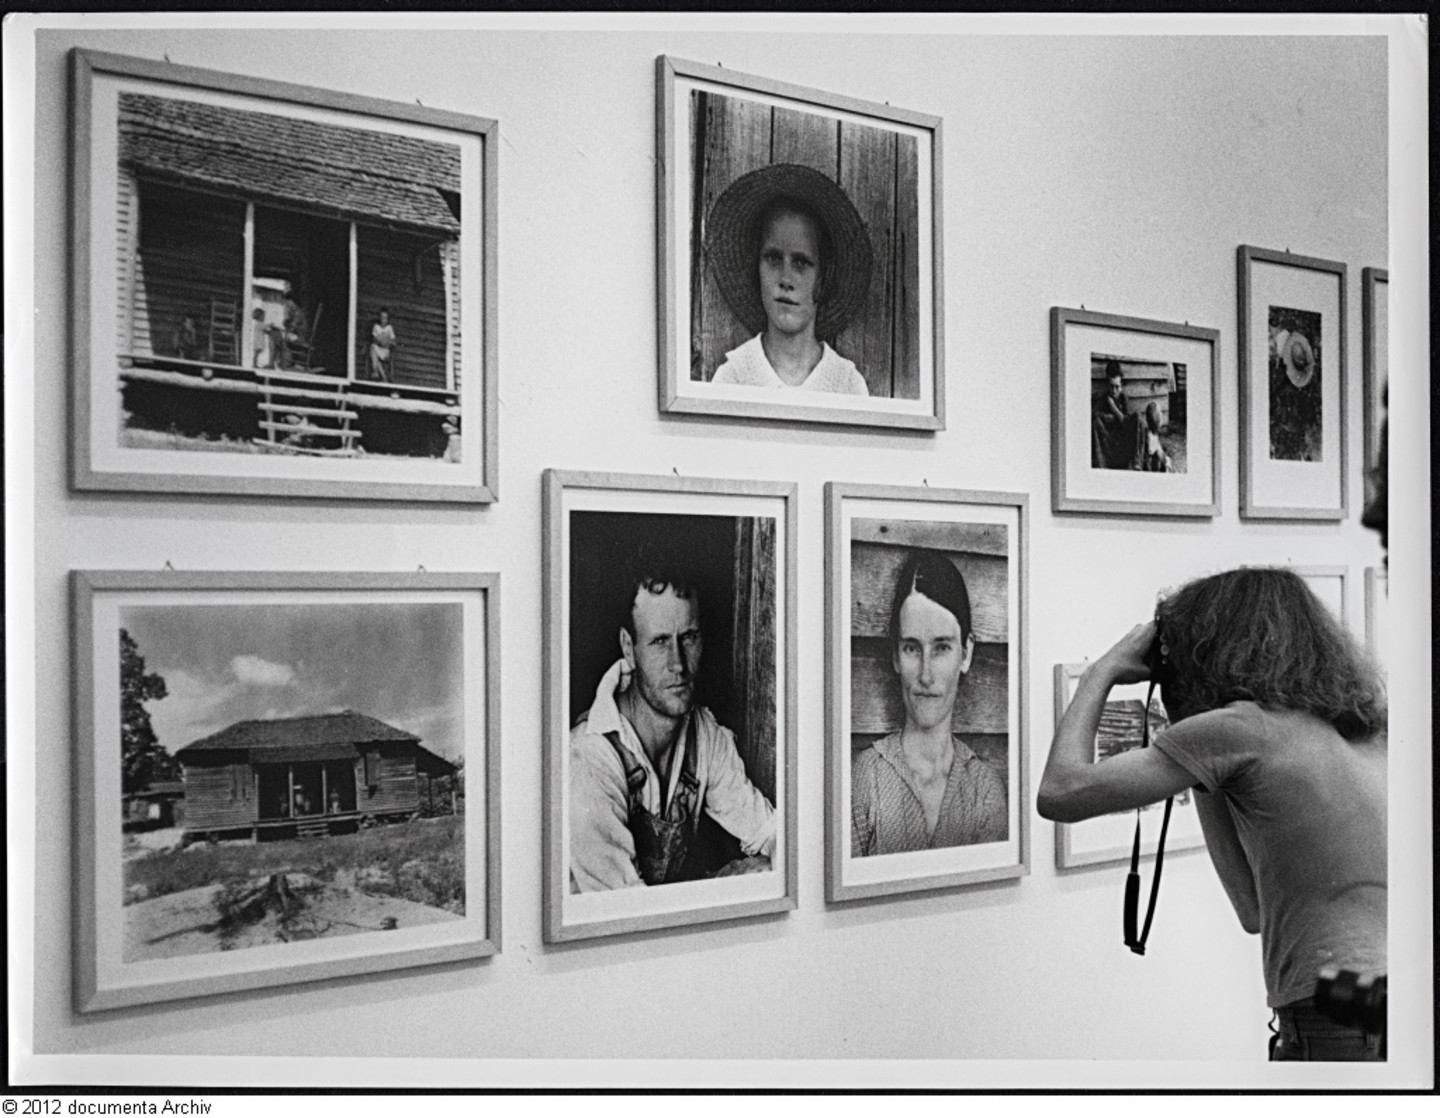 Ausstellungsansicht mit Aufnahmen aus den Südstaaten (1935 – 1936) von Walker Evans. documenta 6 (1977).  © documenta archiv / Foto: Georg Nemec